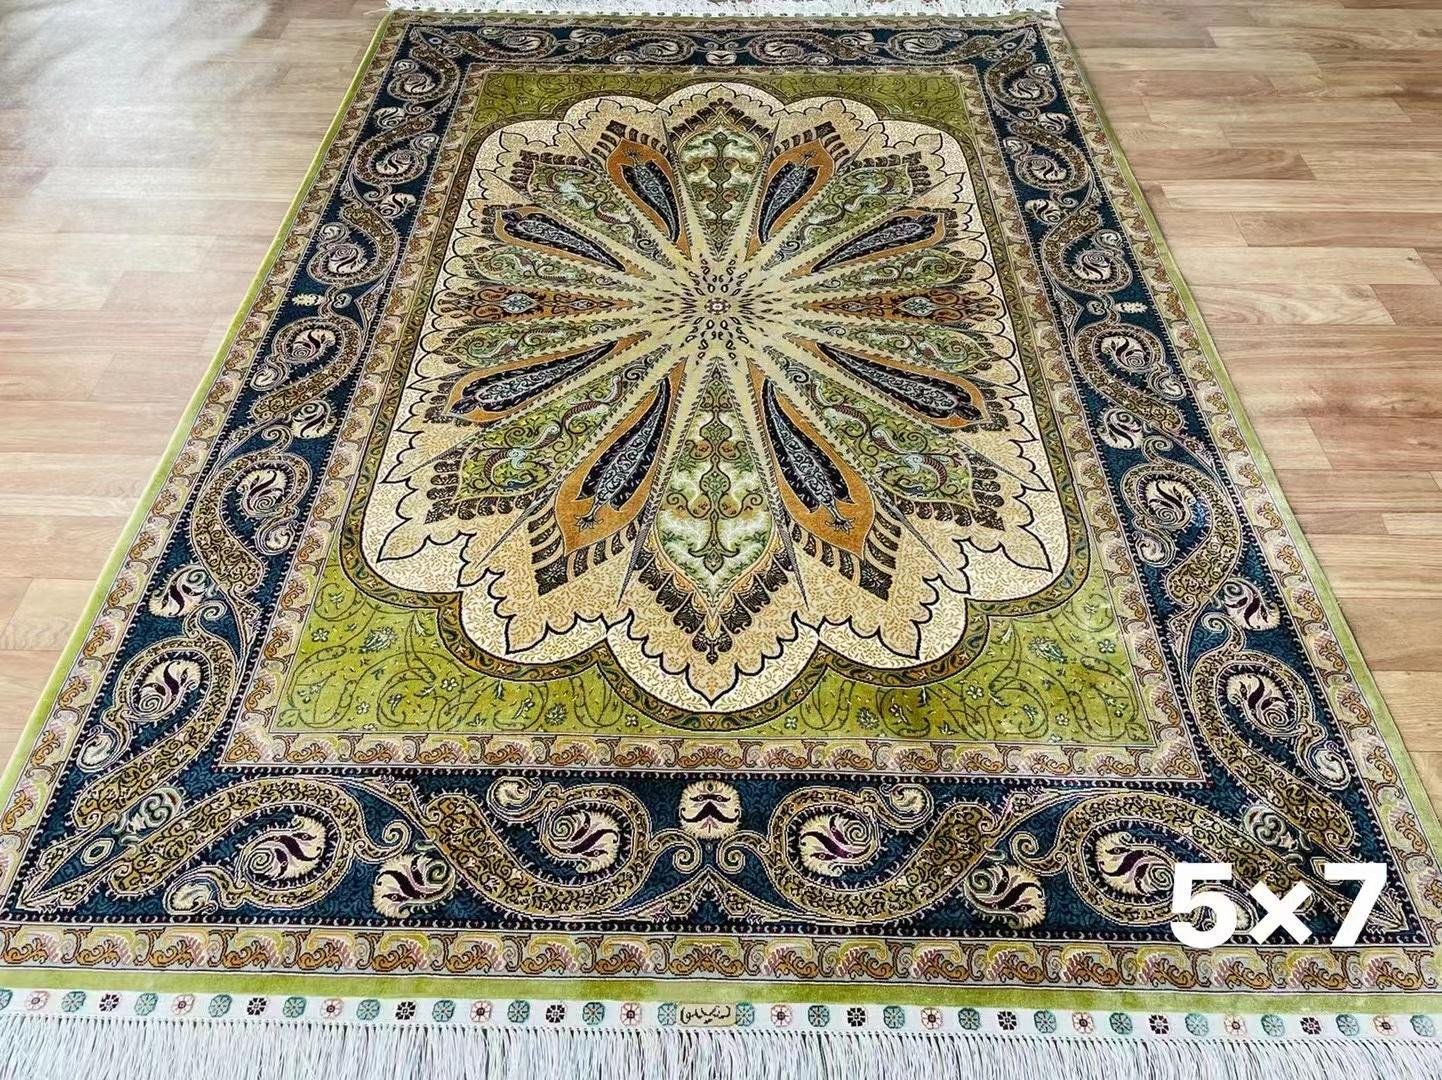  5x7ft 手工编织真丝欧式皇家风格豪华小地毯